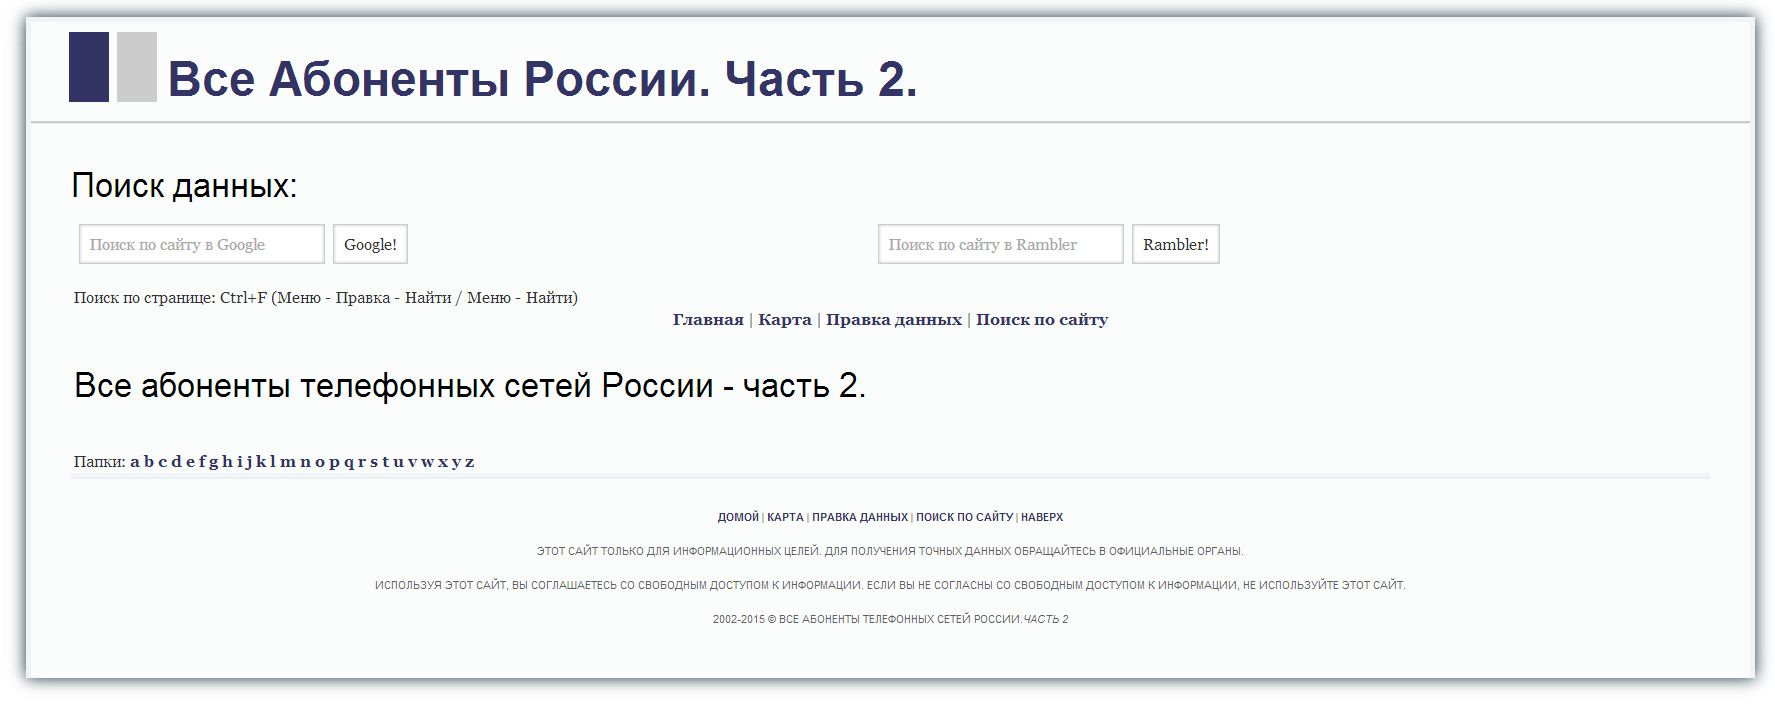 Роскомнадзор заблокировал базу данных с адресами более 1,5 млн россиян